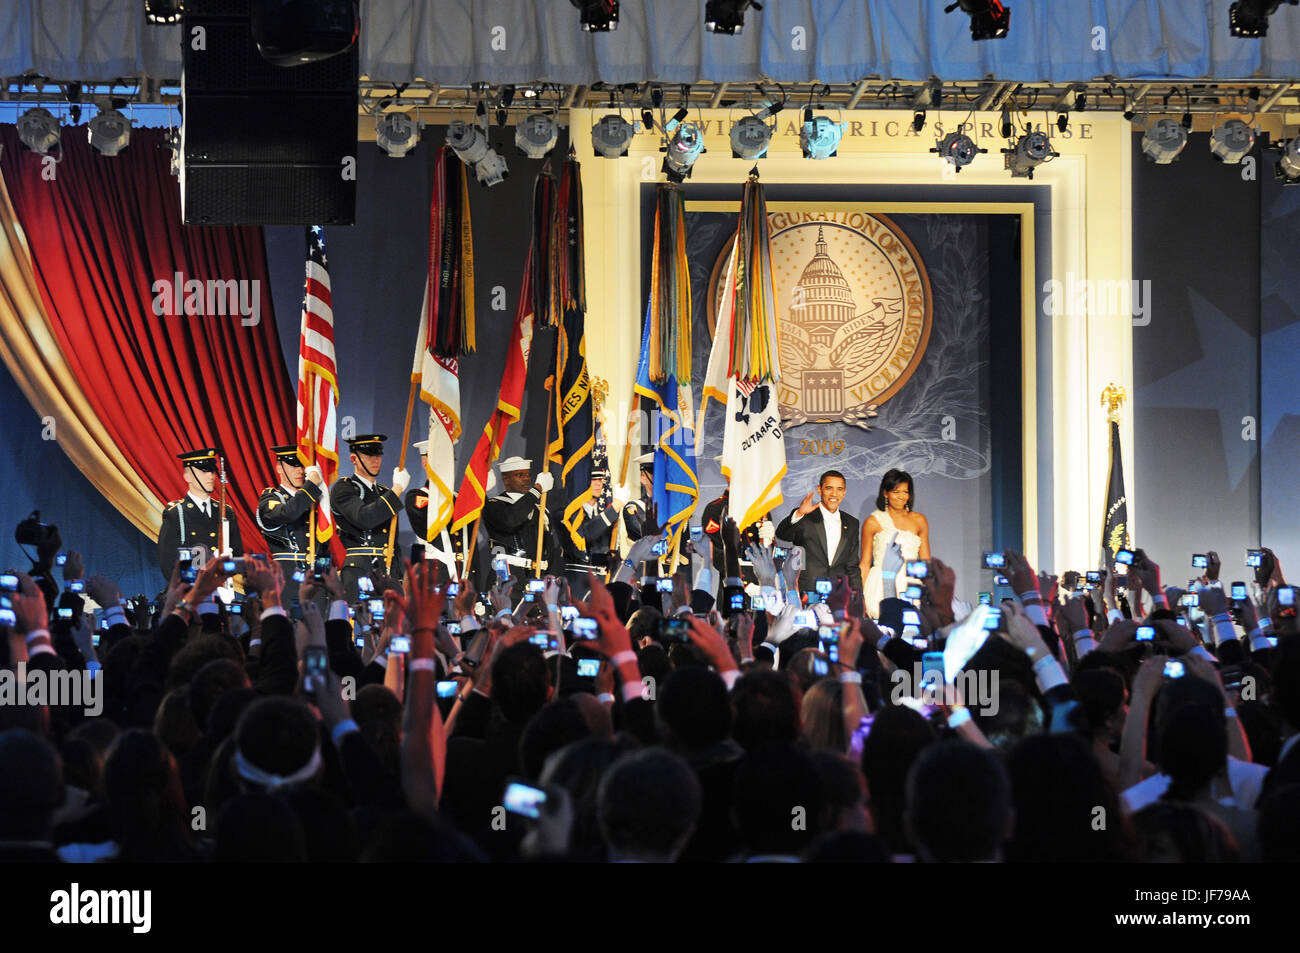 Il presidente Barack Obama e la first lady Michelle Obama arriva alla sfera della gioventù nel centro cittadino di Washington, d.c., jan. 20, 2009. Foto di affari pubblici specialist 1a classe kyle niemi, della guardia costiera statunitense Foto Stock